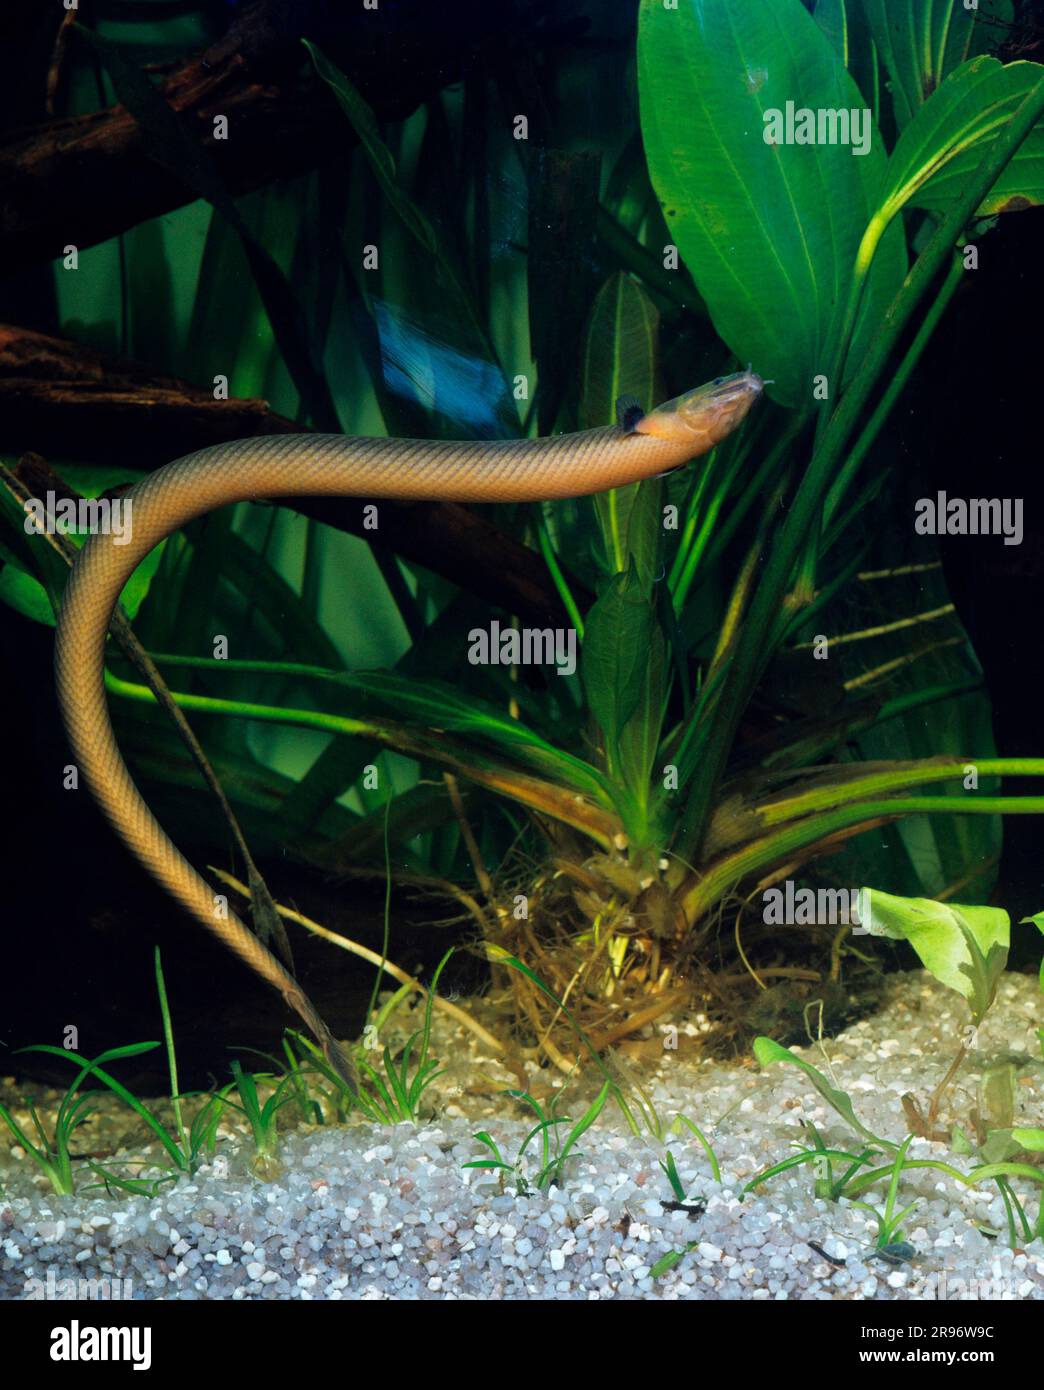 Reedfish (Erpetoichthys calabaricus) (Calamoichthys calabaricus), snakefish, roundfish Stock Photo